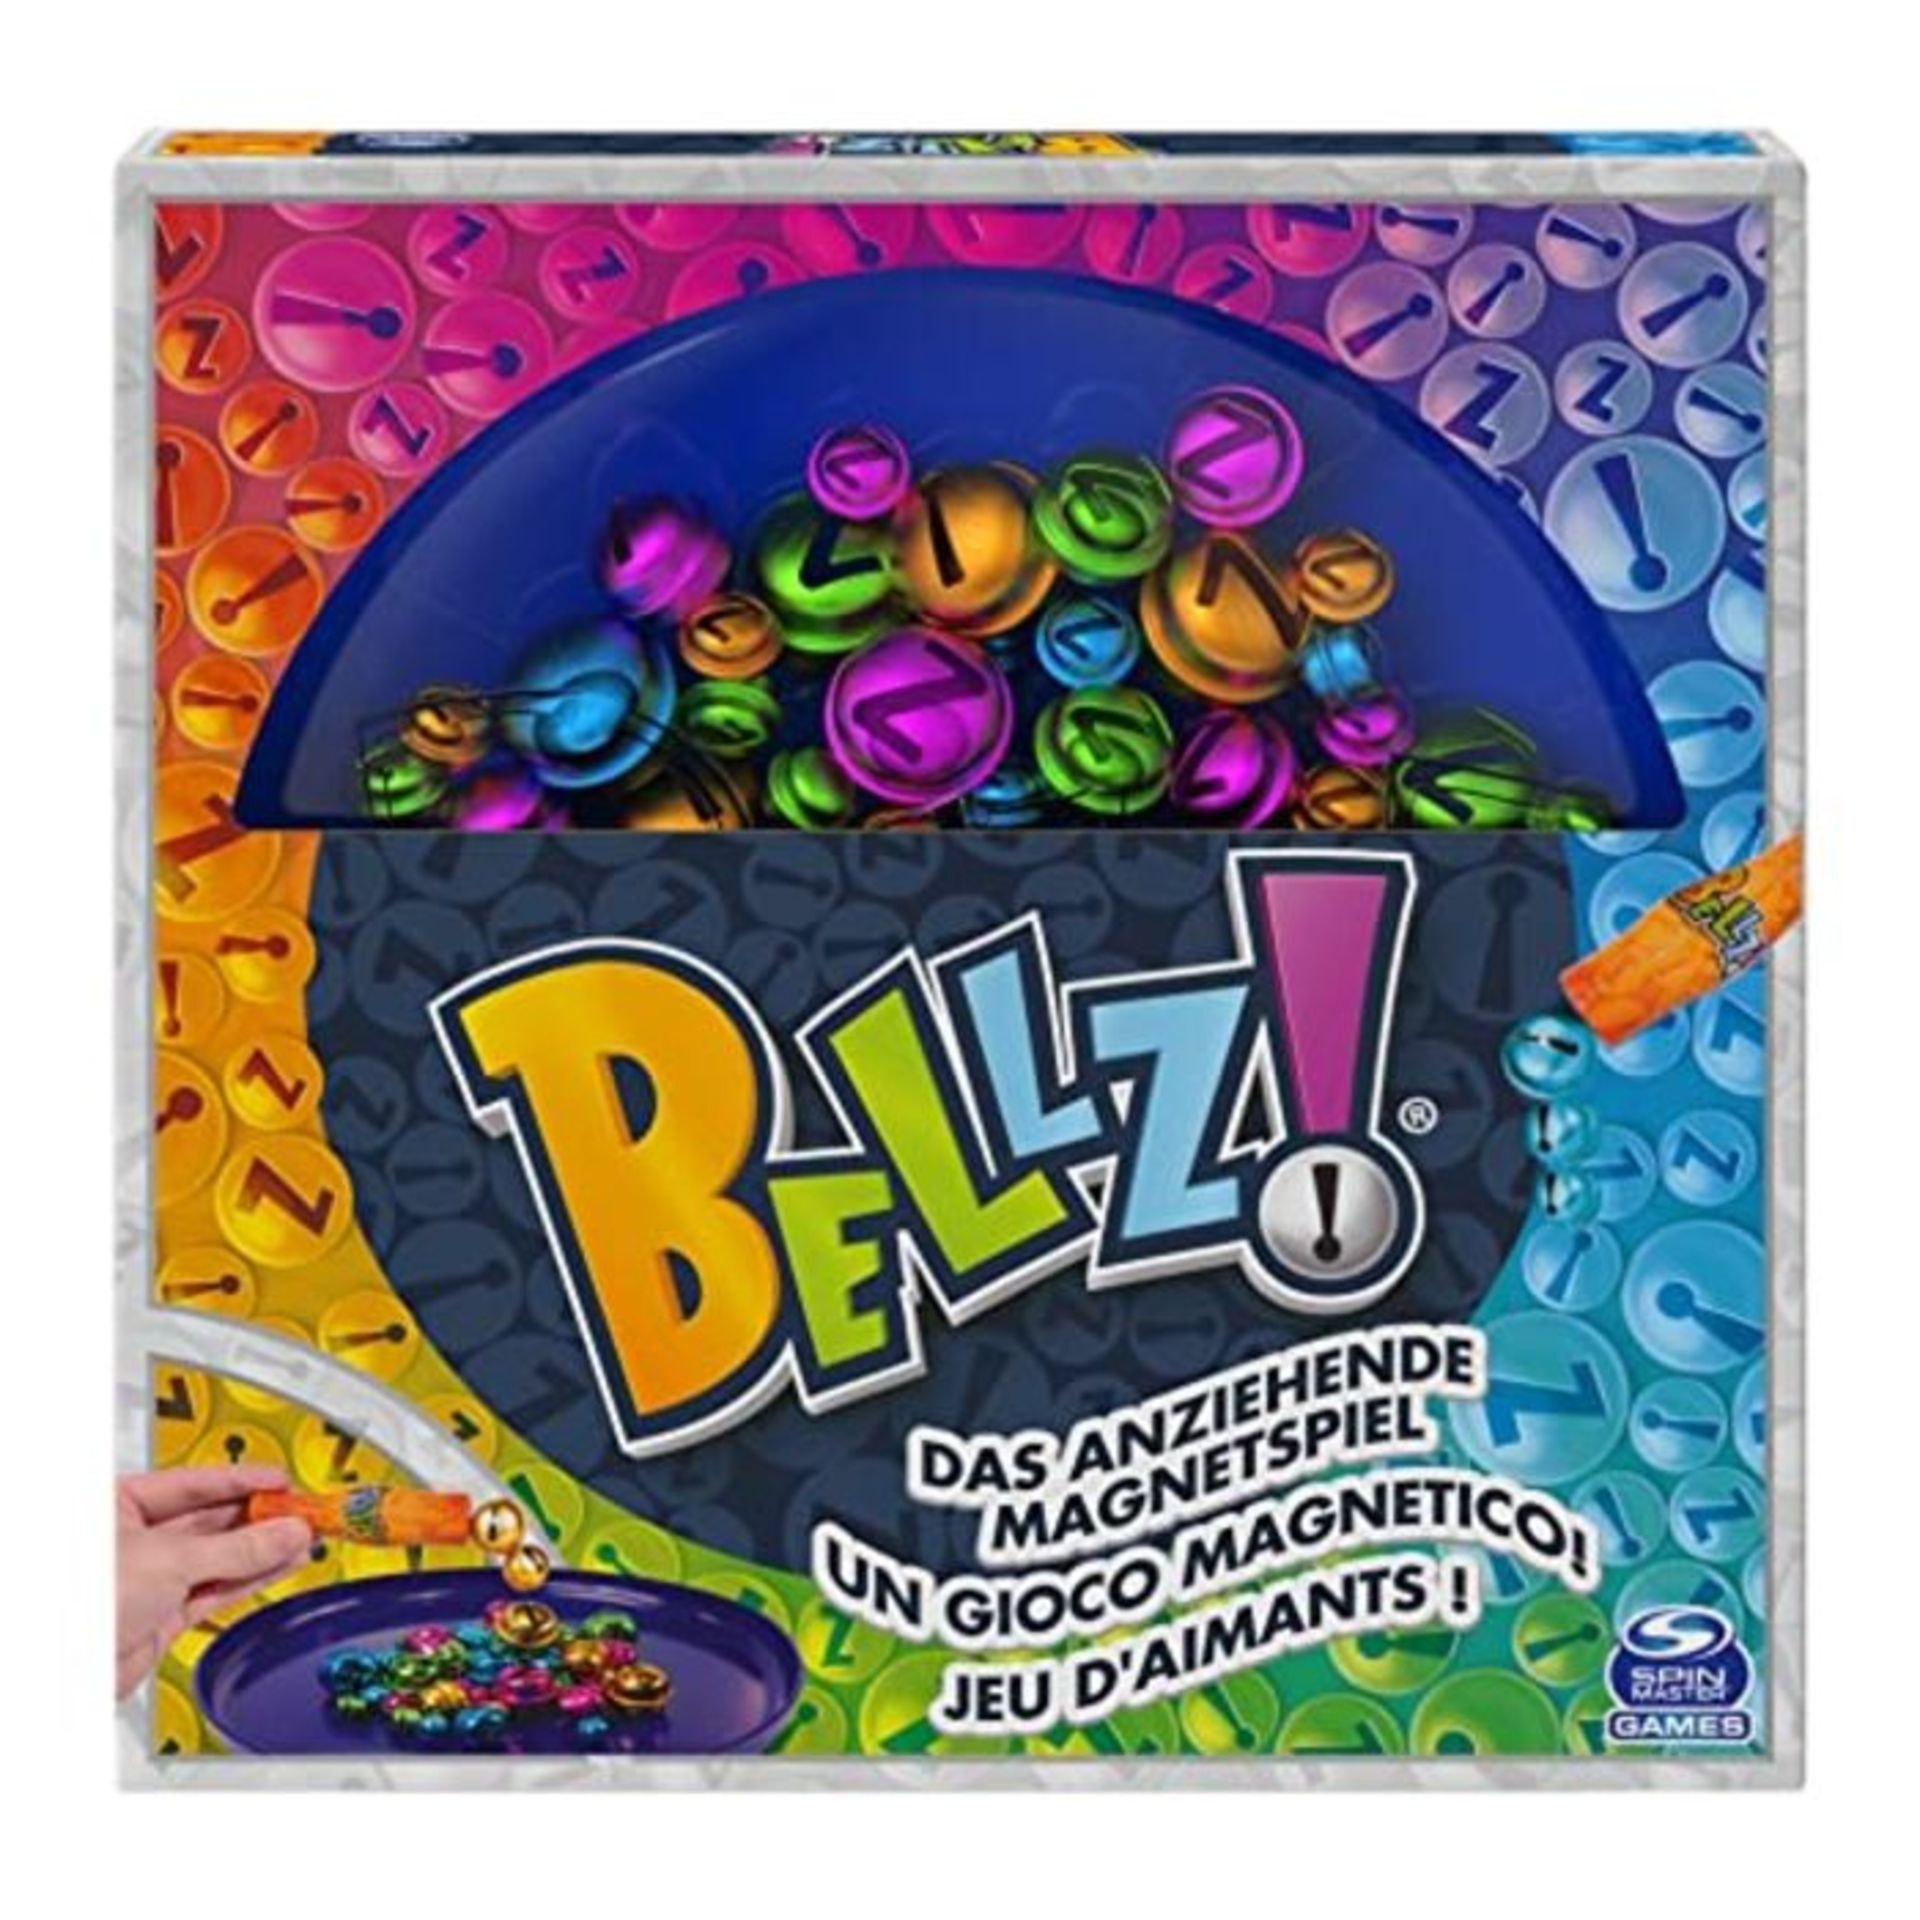 Spin Master Games 6059530 Games Bellz - Das anziehende Magnetspiel für die ganze Fami